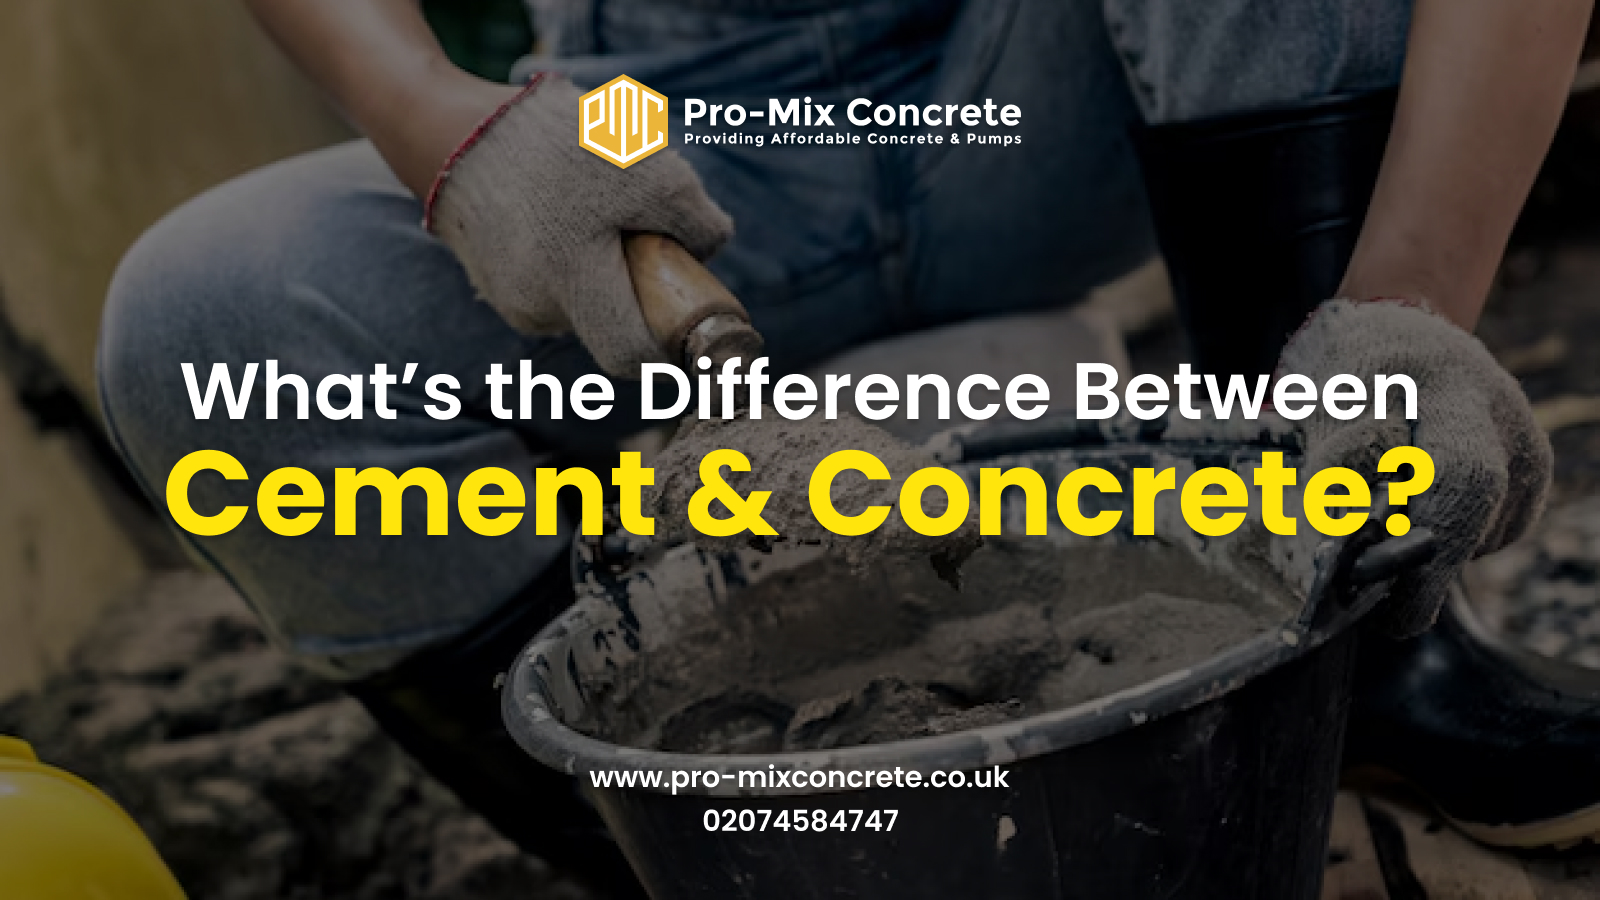 Cement VS Concrete